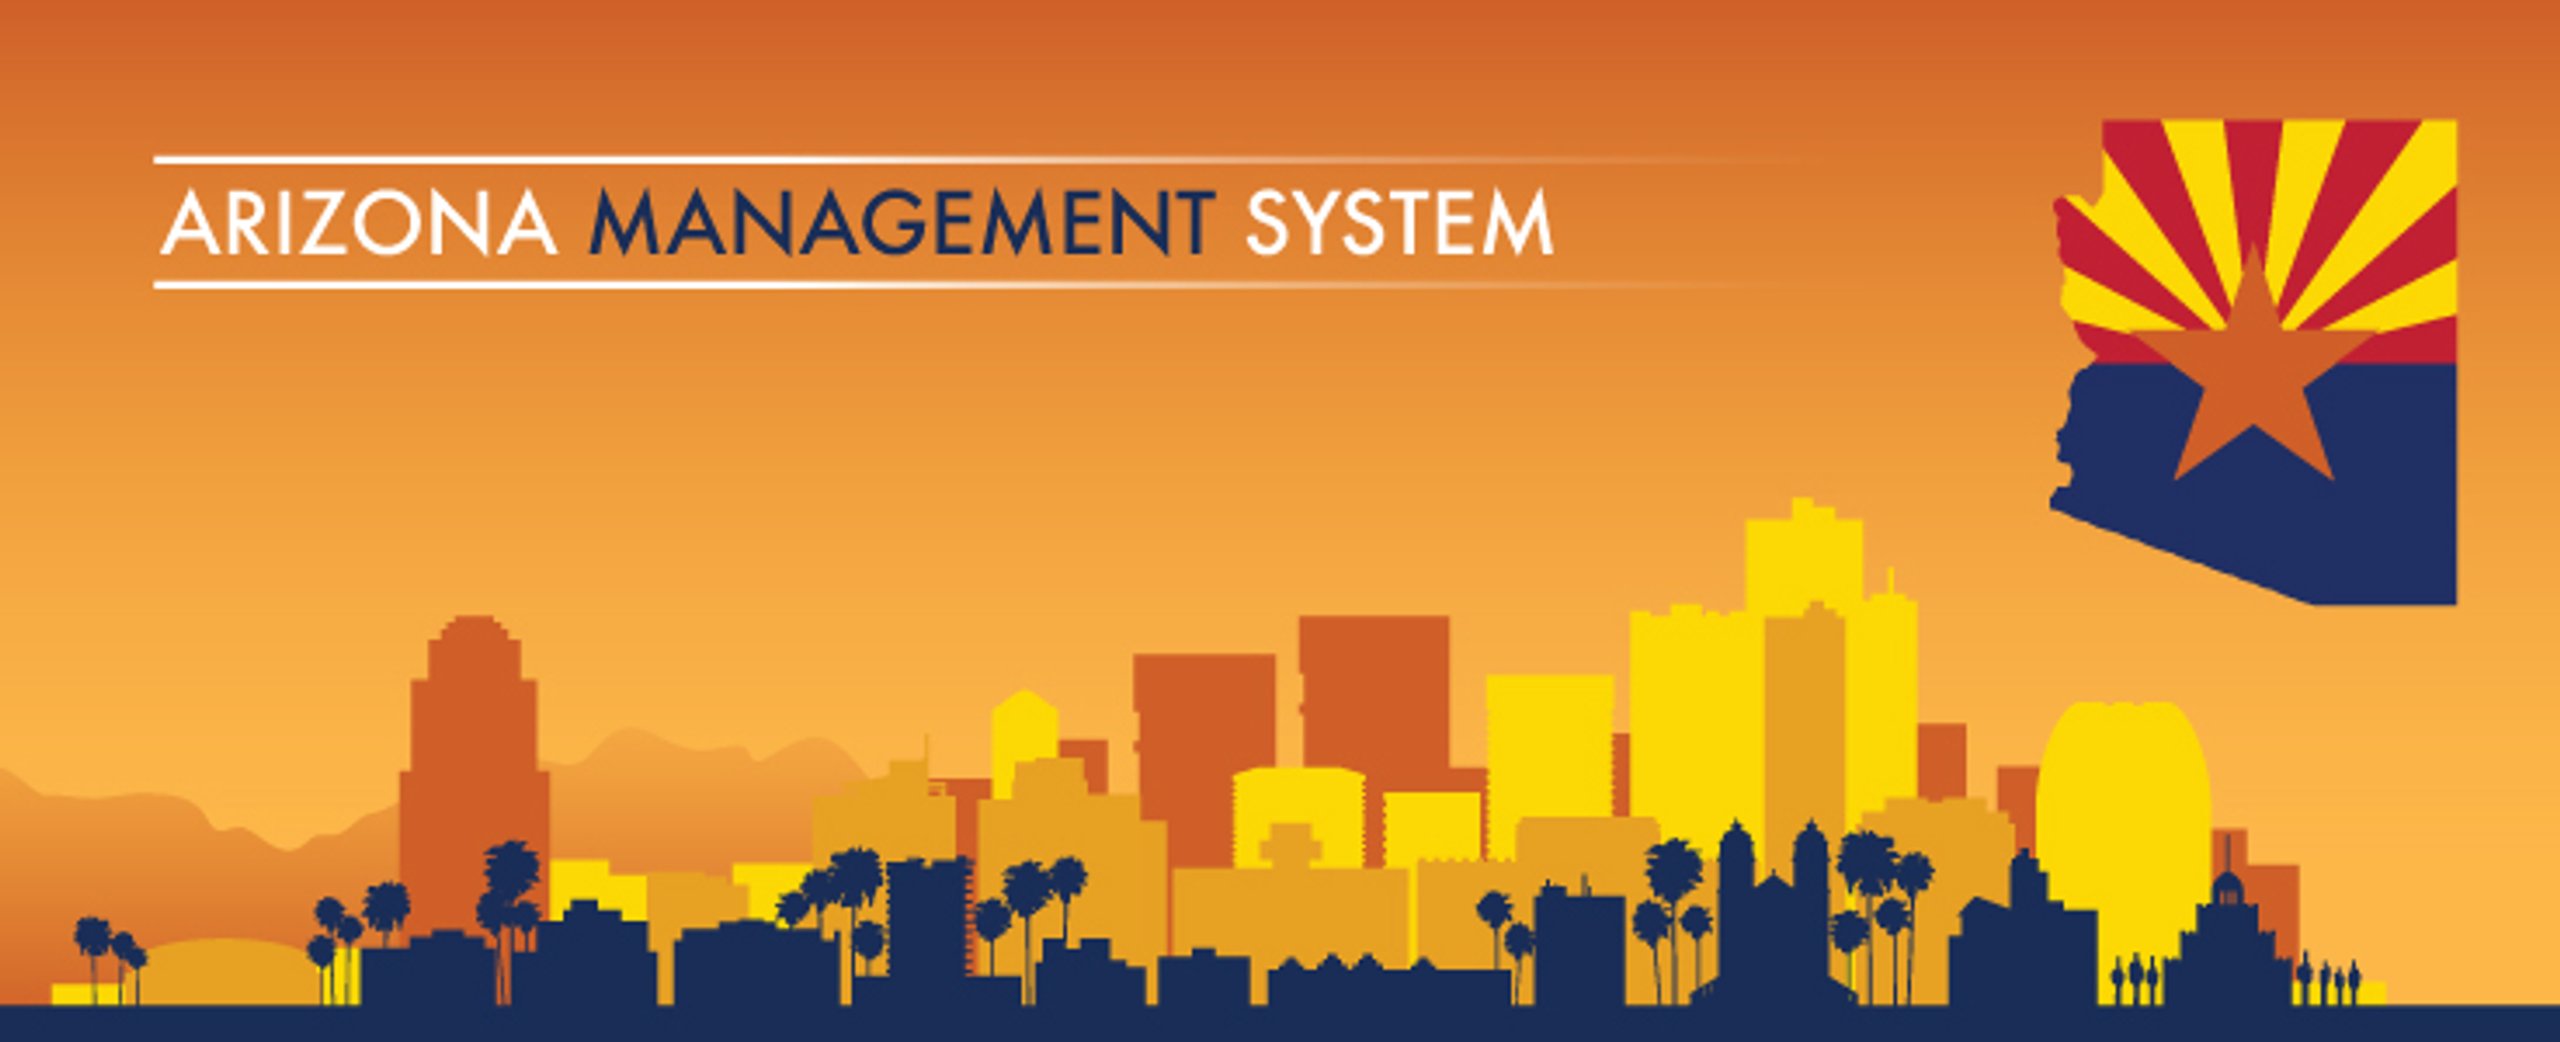 Arizona Management System